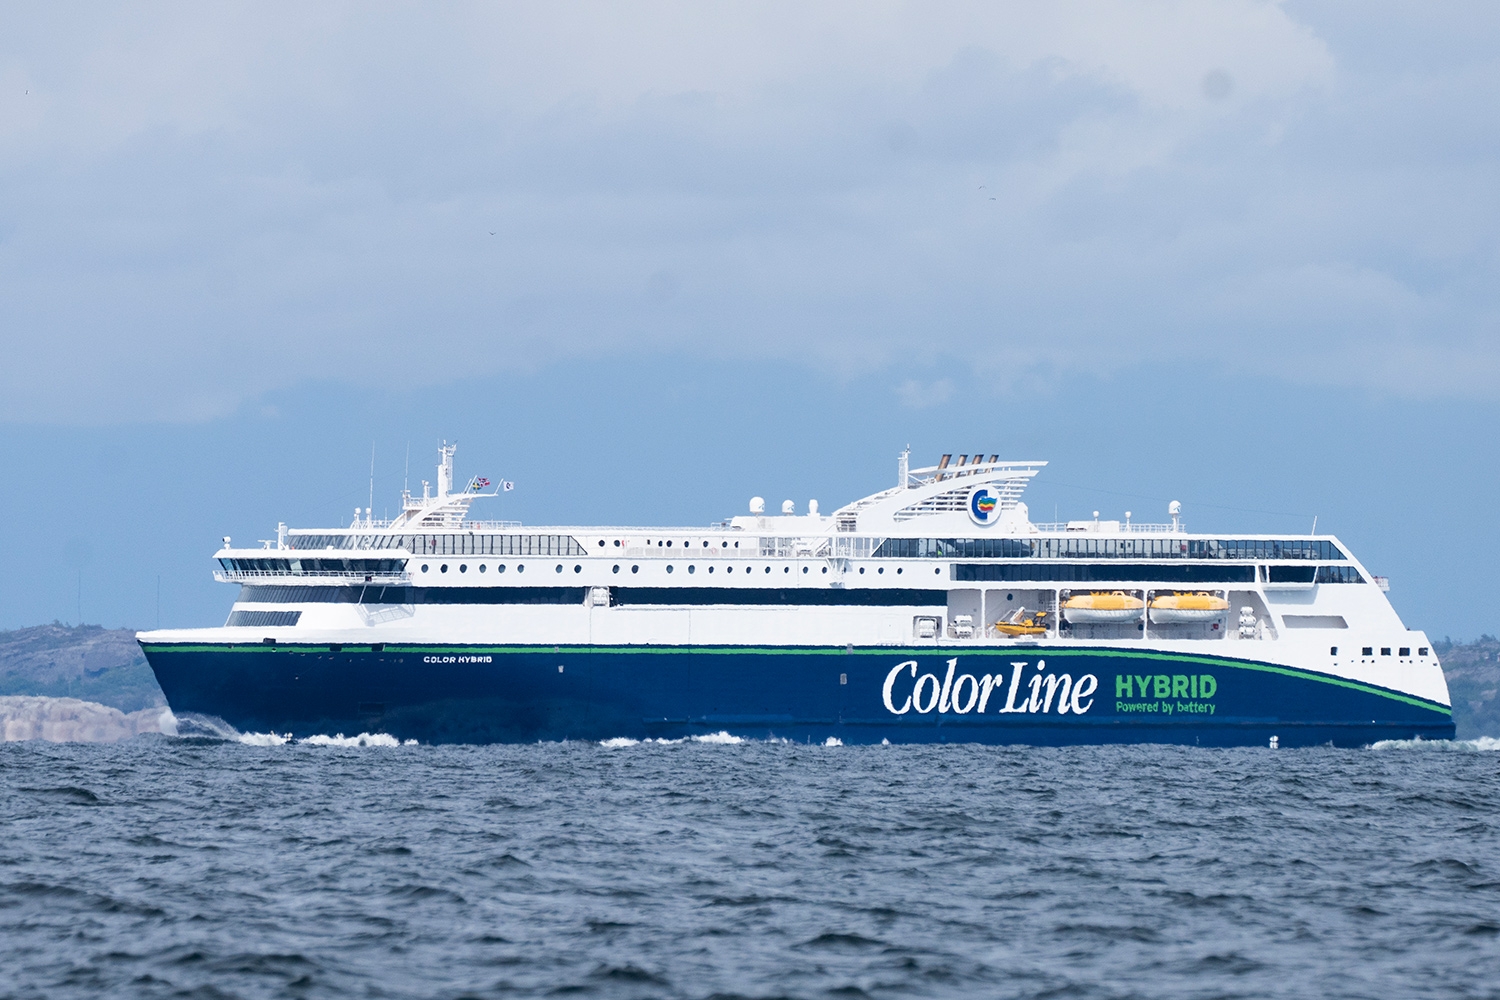 Color Line kan igjen seile fra Sandefjord etter at havnen tirsdag fikk tilbake godkjenning som internasjonal havn. 